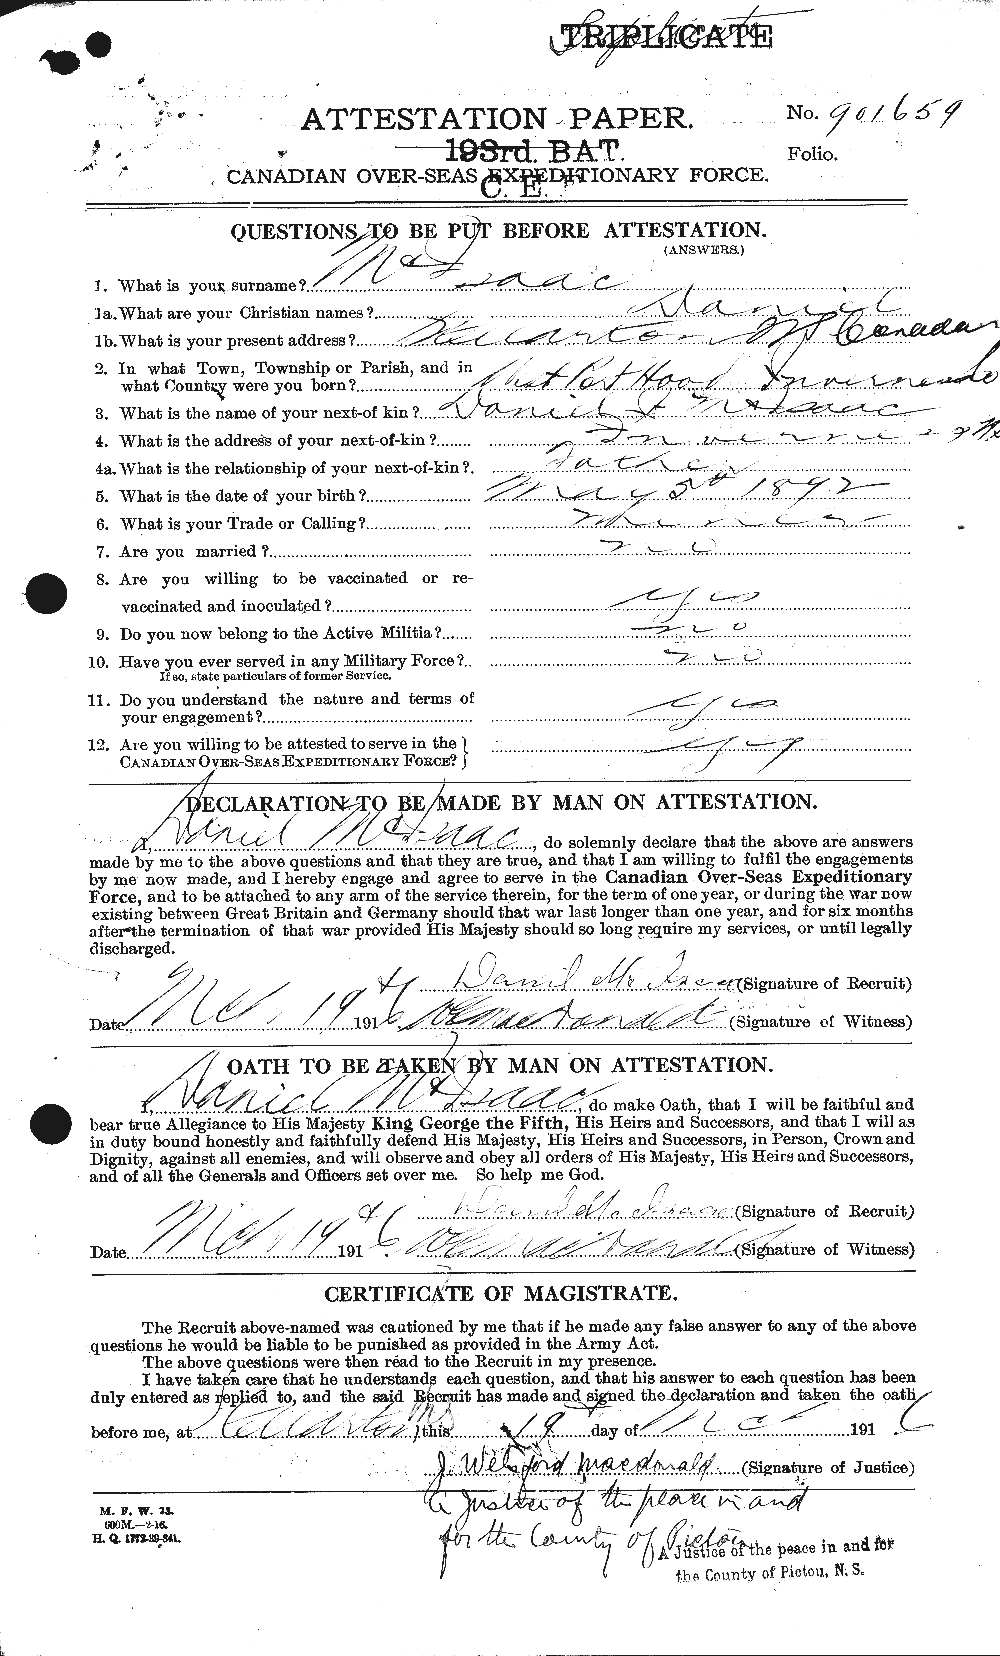 Dossiers du Personnel de la Première Guerre mondiale - CEC 527707a